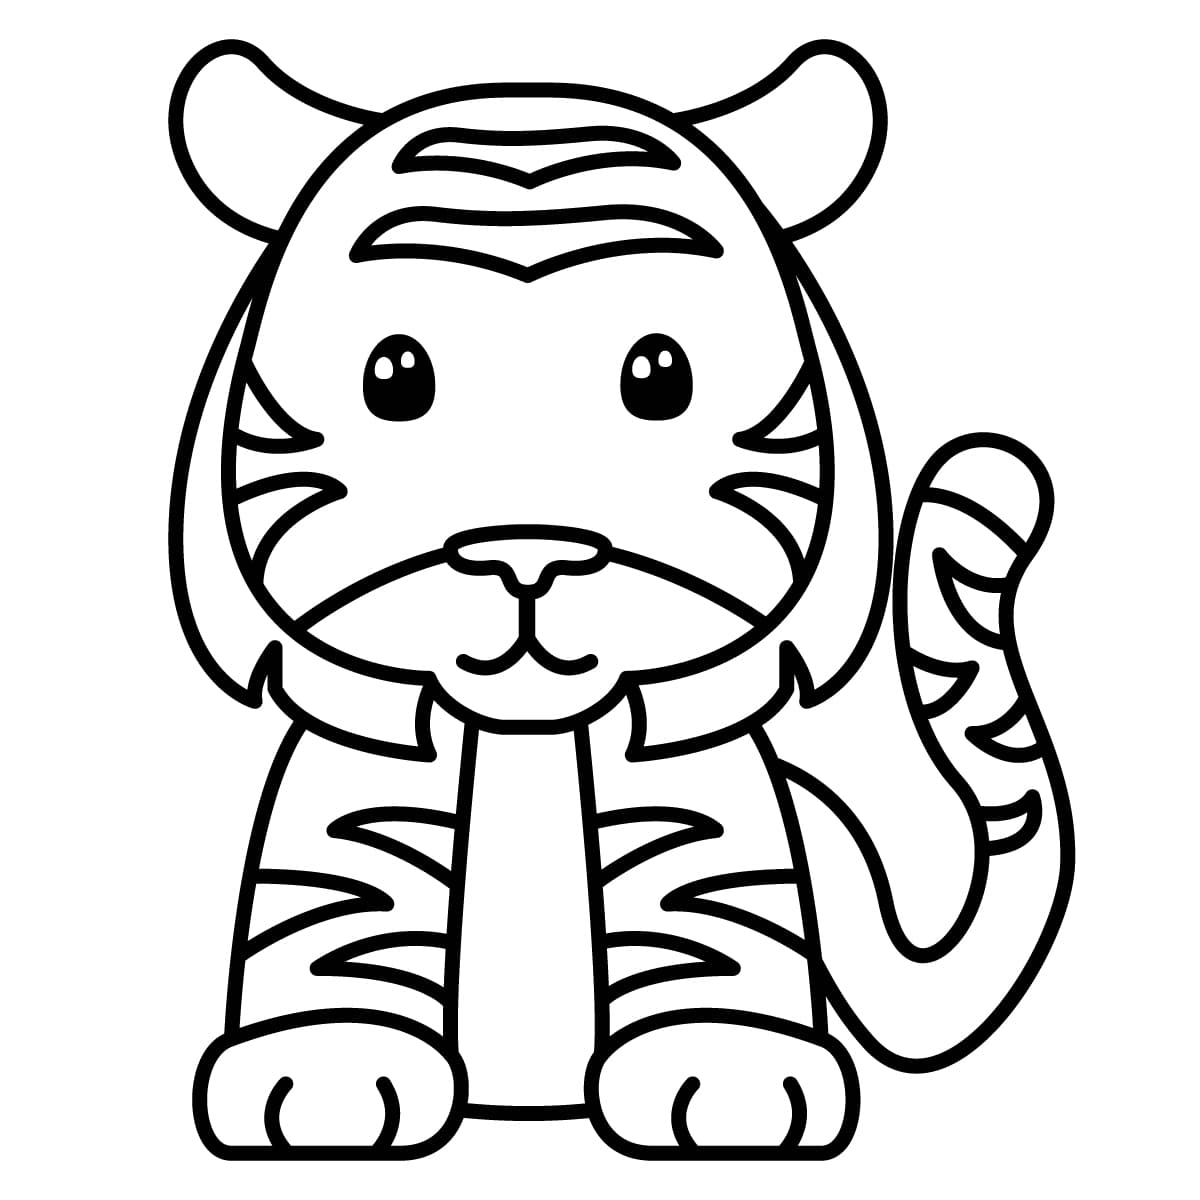 Dibujo de tigre para colorear e imprimir - Dibujos y colores